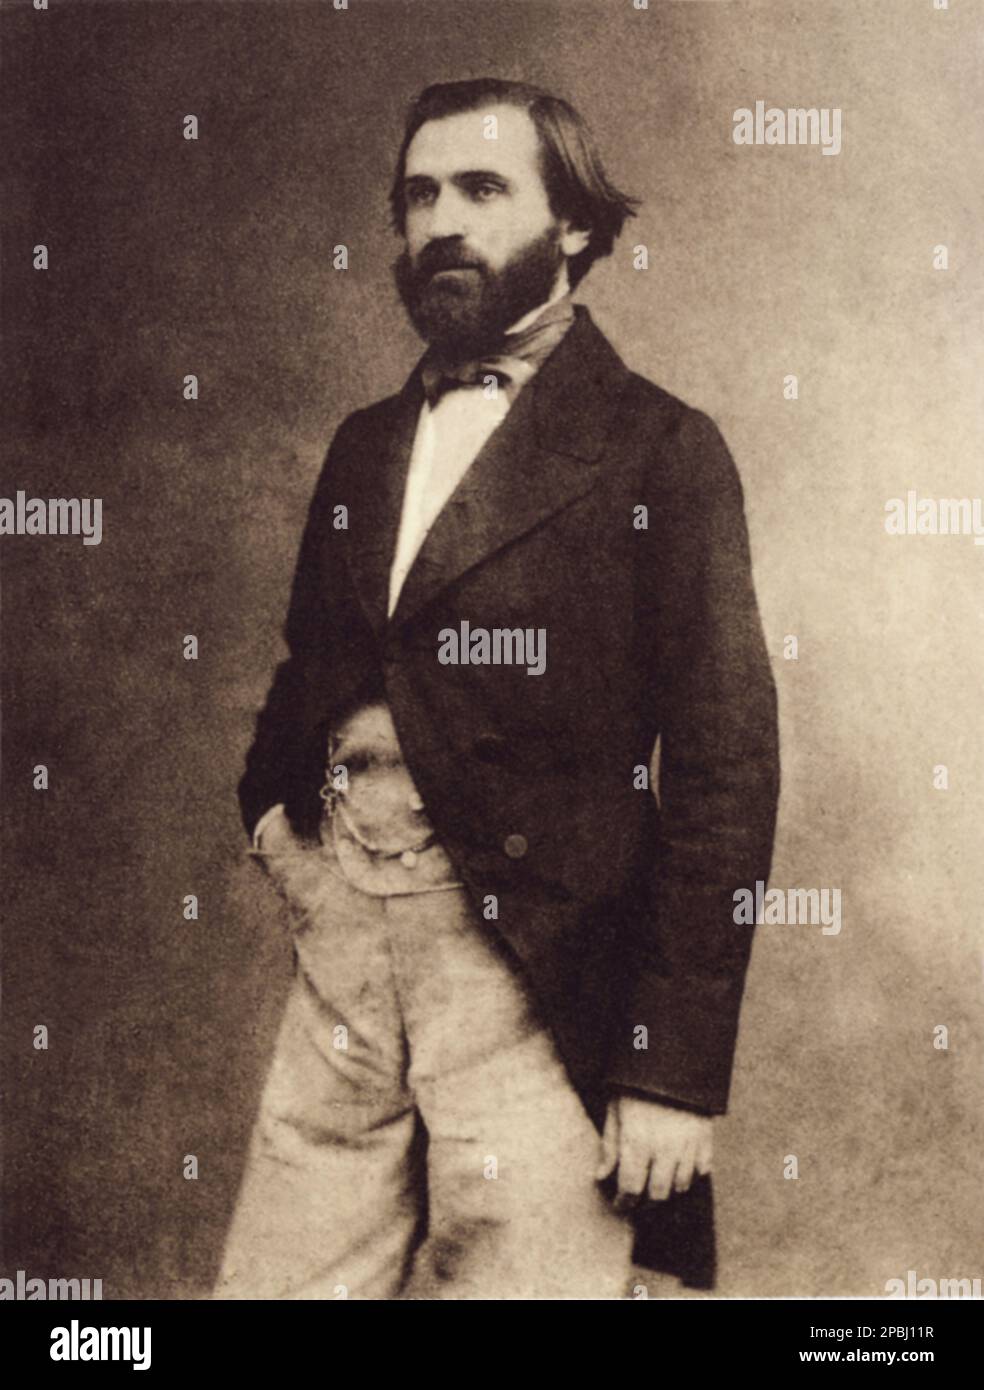 1857 , Parigi , Francia : il celebre compositore italiano GIUSEPPE VERDI ( 1813 - 1901 ). FOTO DI E. DIDERI - COMPOSITORE - OPERA LIRICA - CLASSICA - CLASSICA - RITRATTO - RITRATTO - MUSICALE - MUSICA - BARBA - BARBA - BARBA - FIOCCO - FIOCCO - CRAVATTA - CRAVATTA - PAPILLON ------- ---- ARCHIVIO GBB Foto Stock